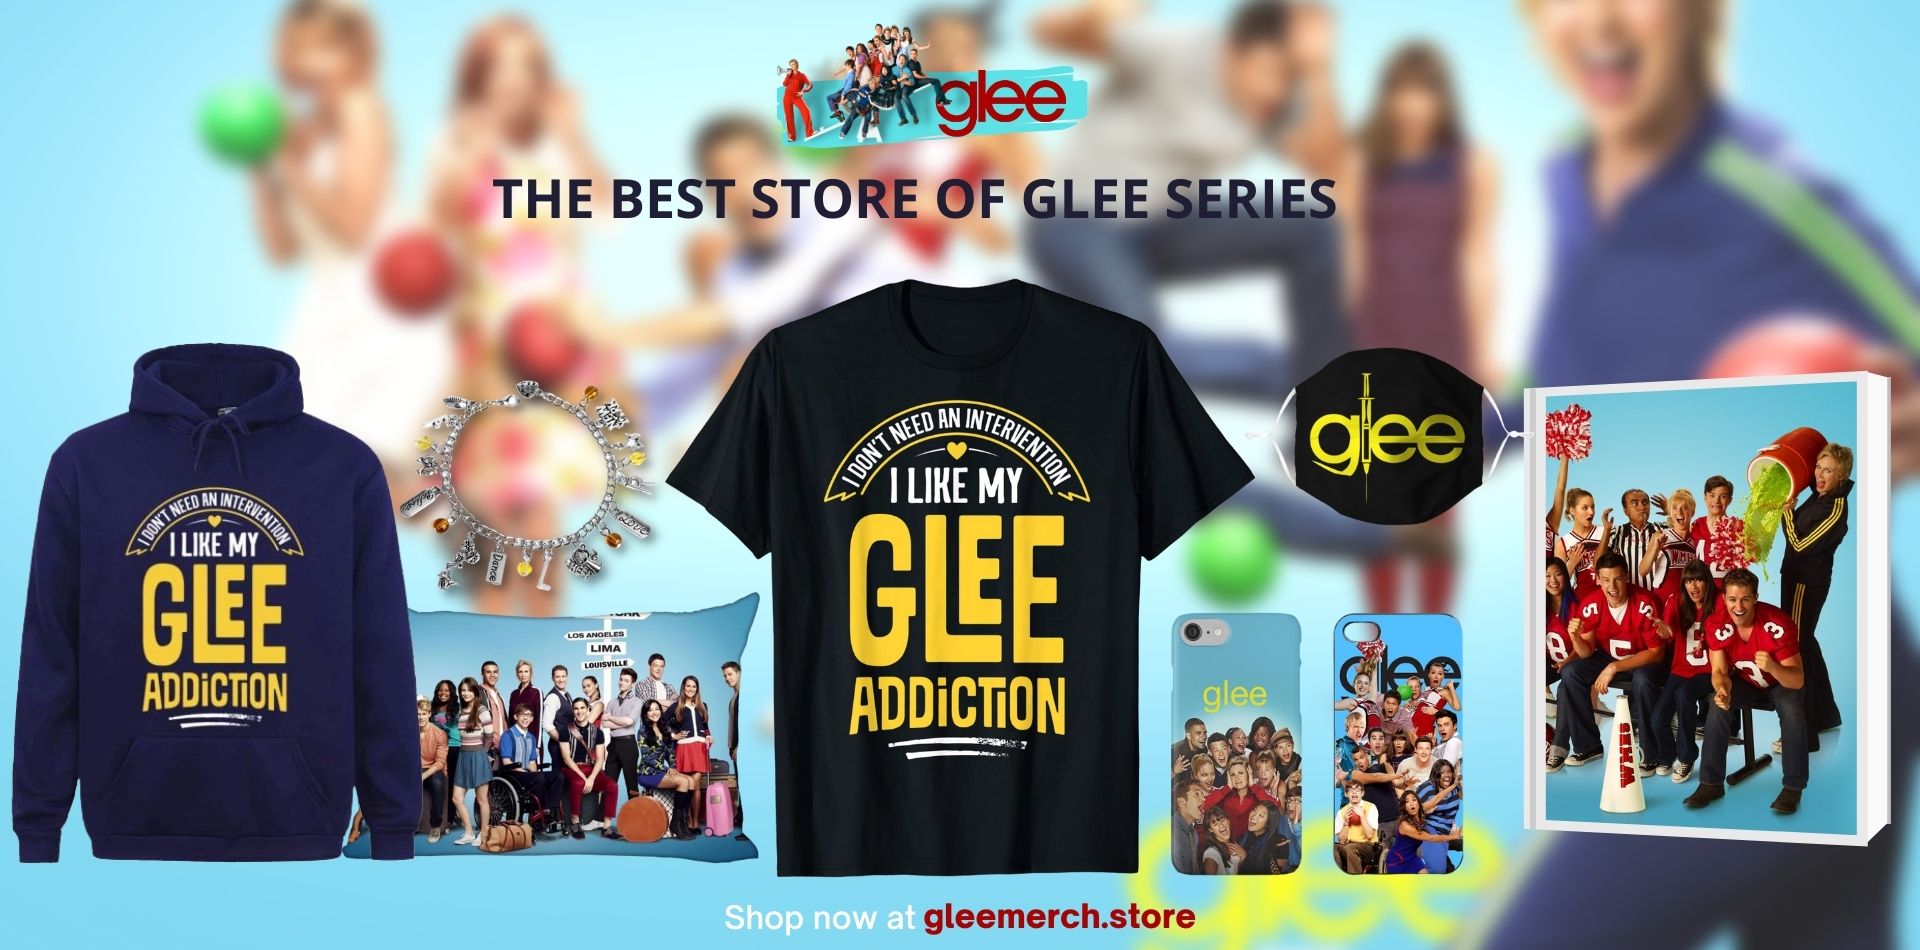 Glee Store Web Banner - Glee Store